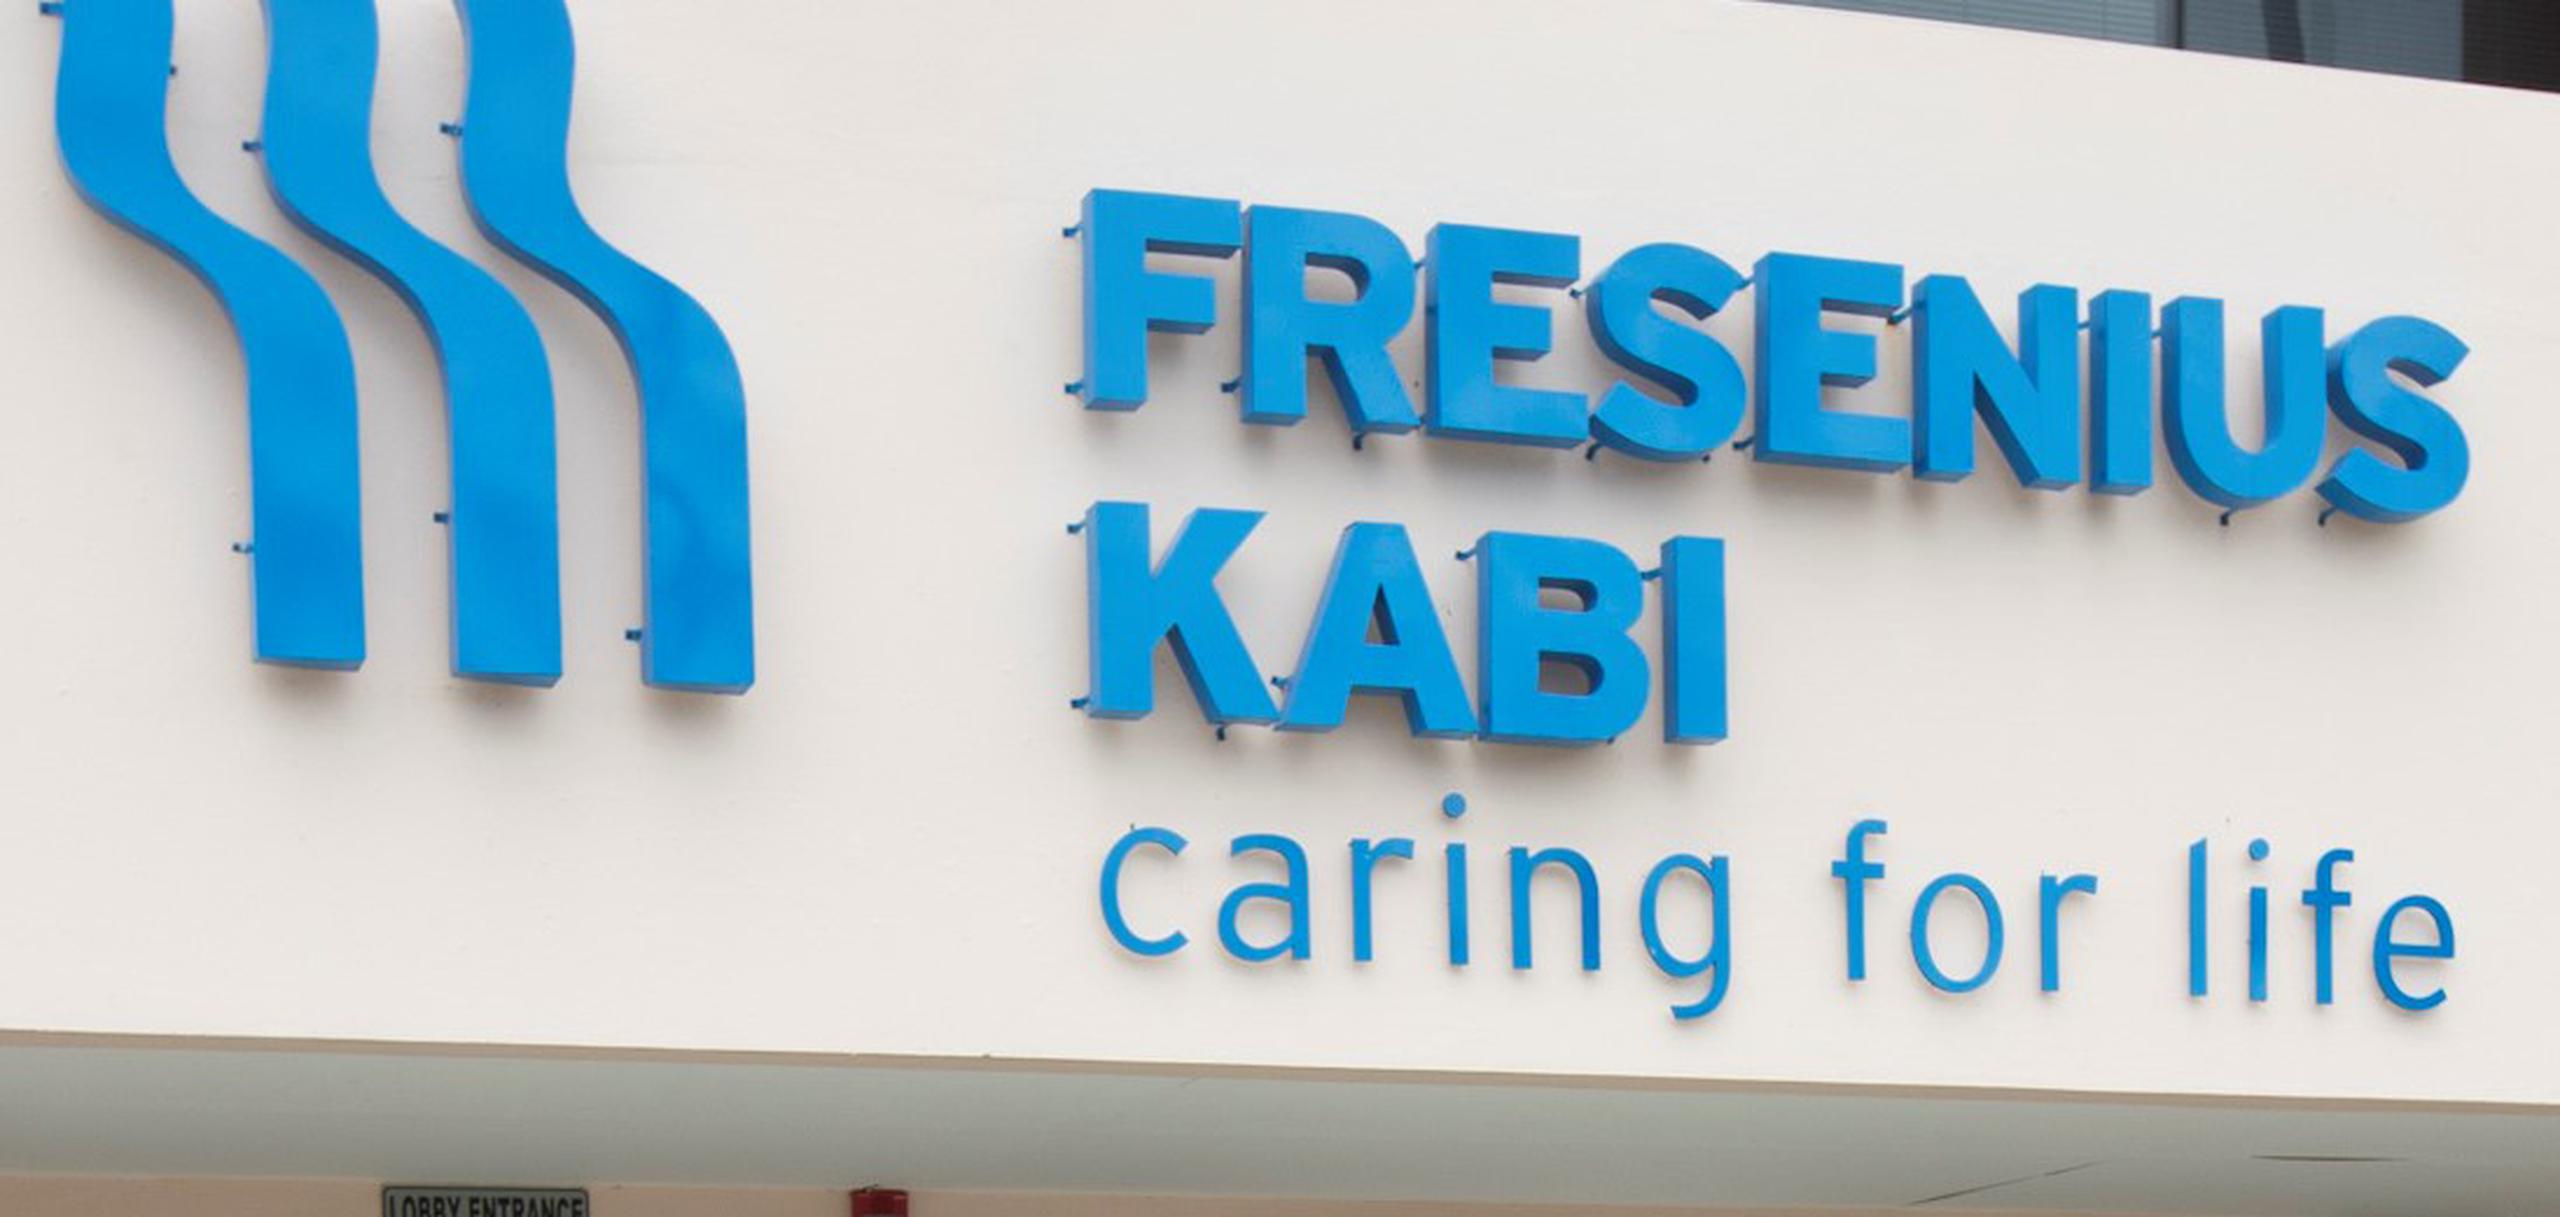 La planta inició operaciones en San Germán hace 25 años, y hace ocho años pasó a ser parte de Fresenius Kabi.